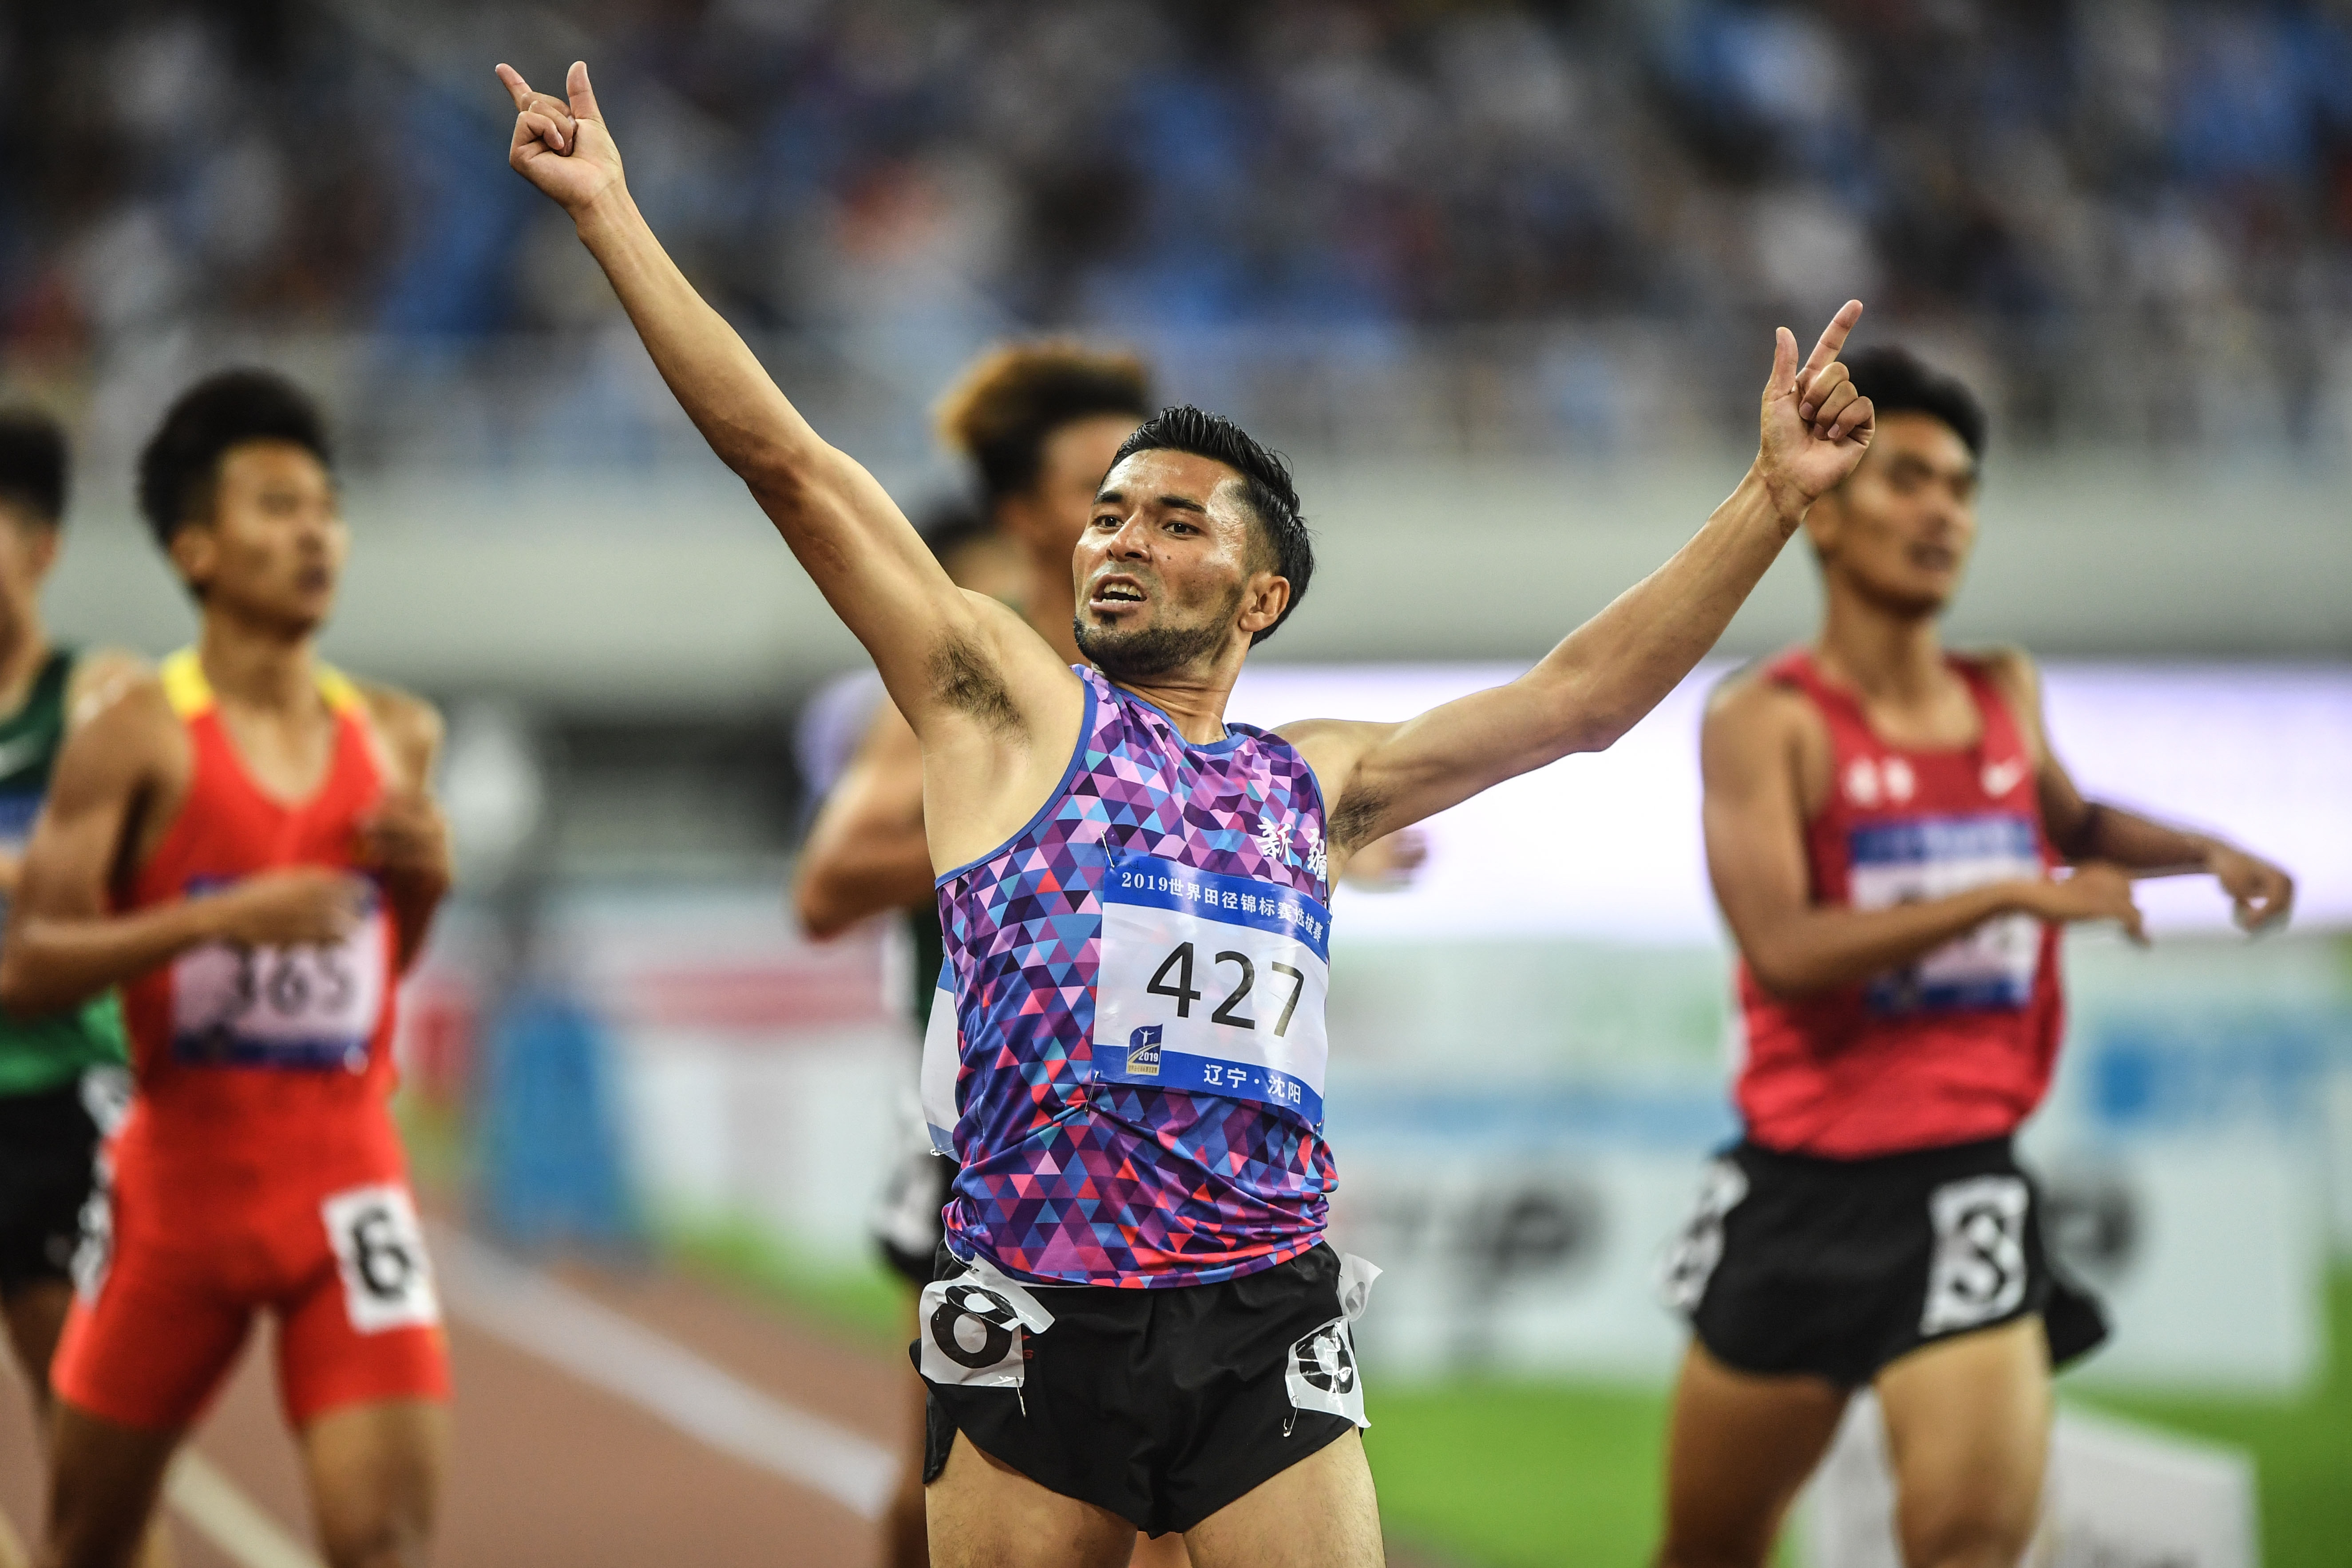 田径——世锦赛选拔赛:男子800米决赛赛况